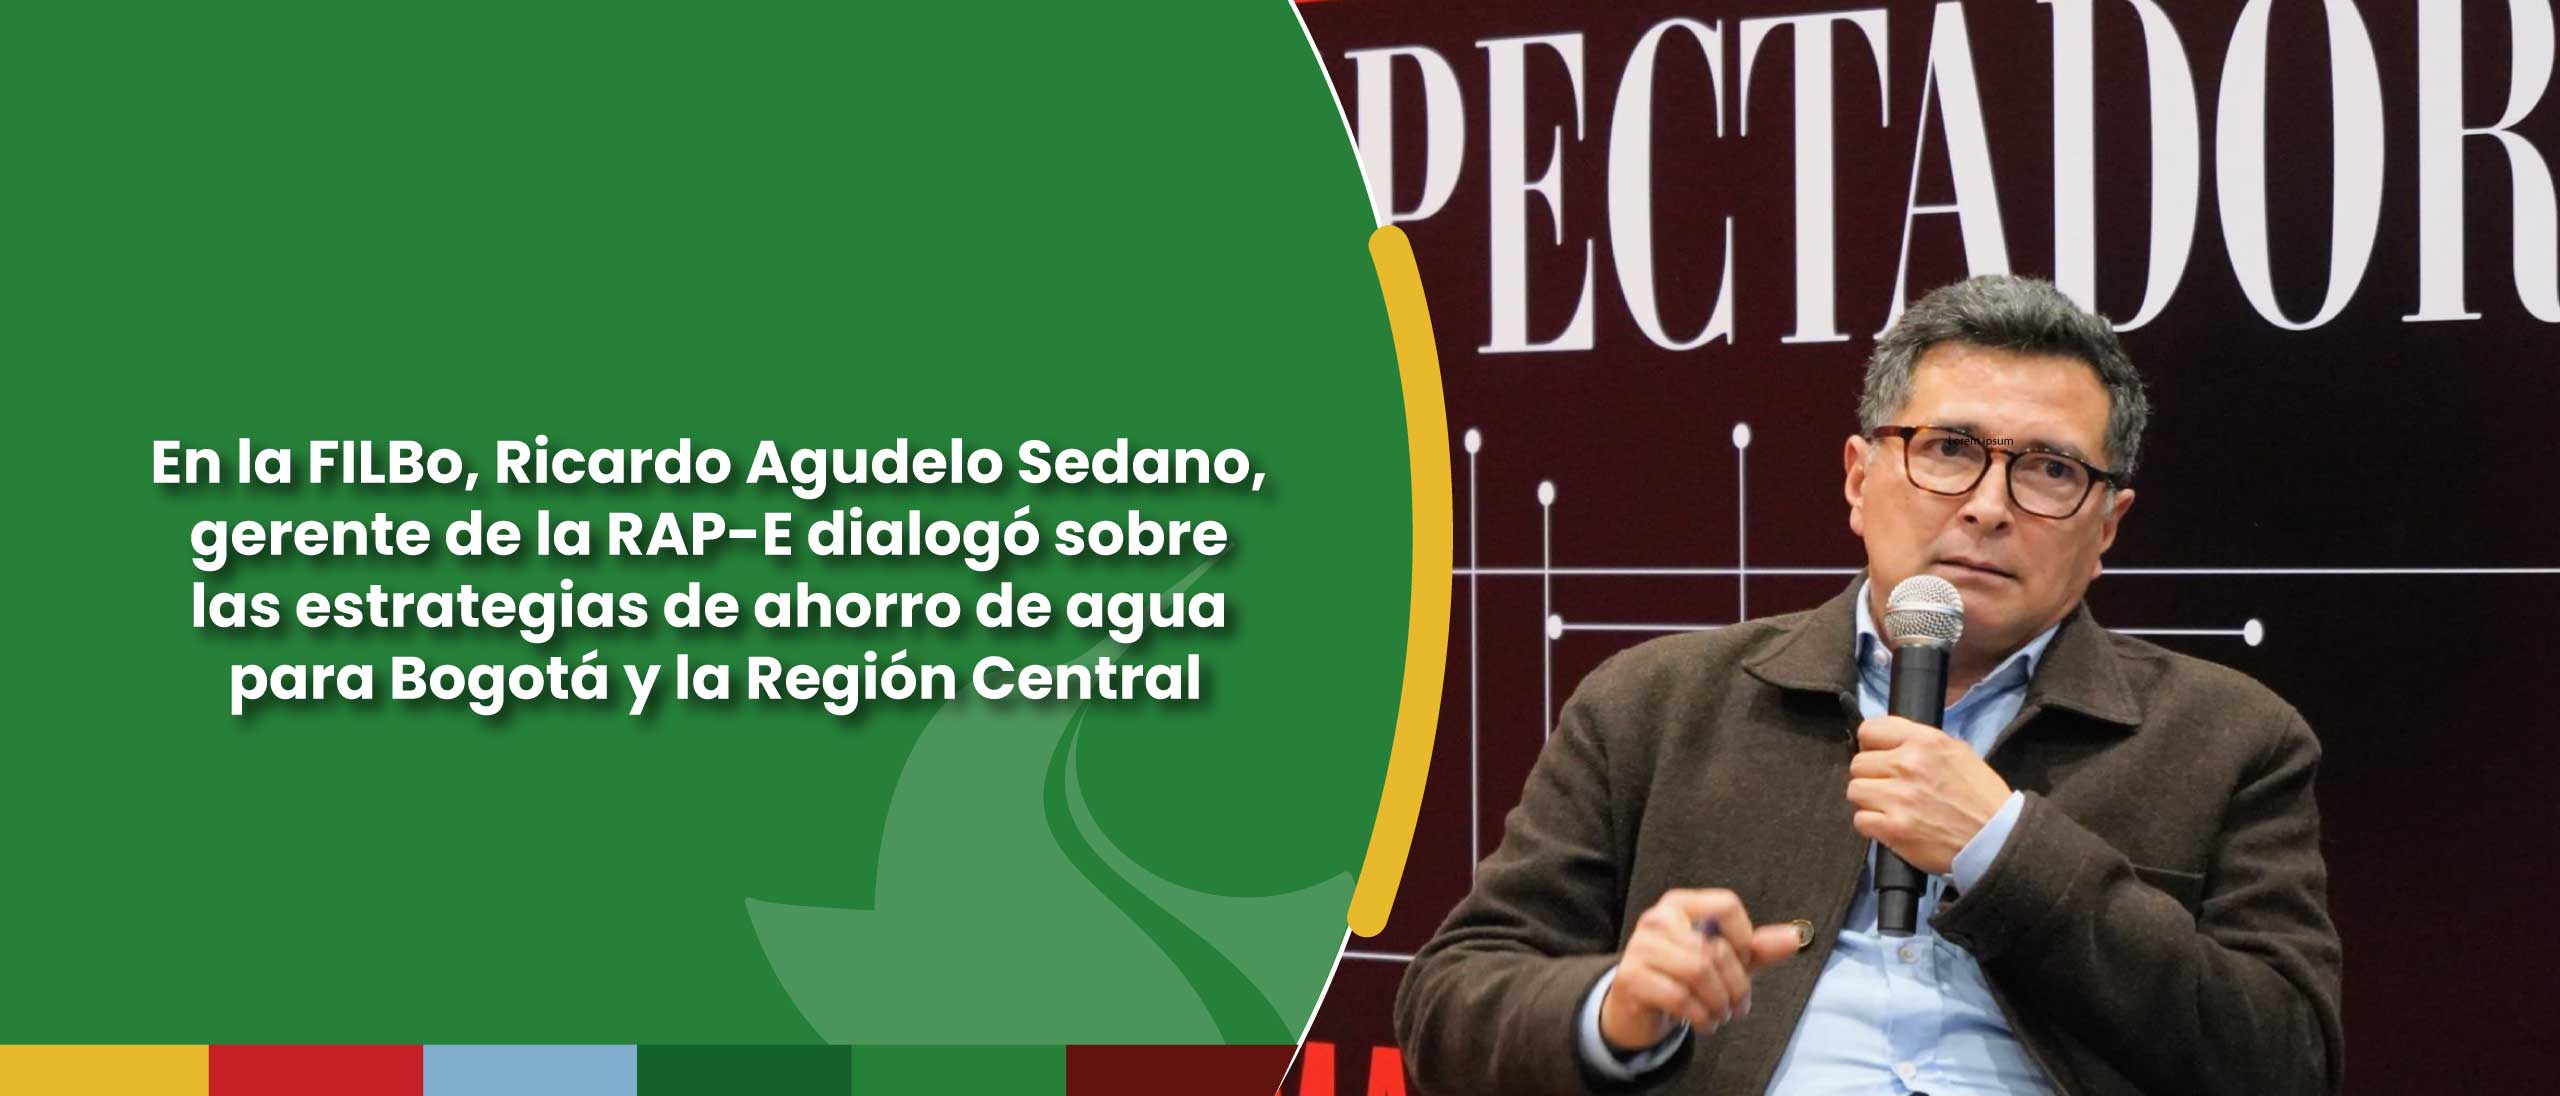 En la FILBo, Ricardo Agudelo Sedano, gerente de la RAP-E dialogó sobre las estrategias de ahorro de agua para Bogotá y la Región Central